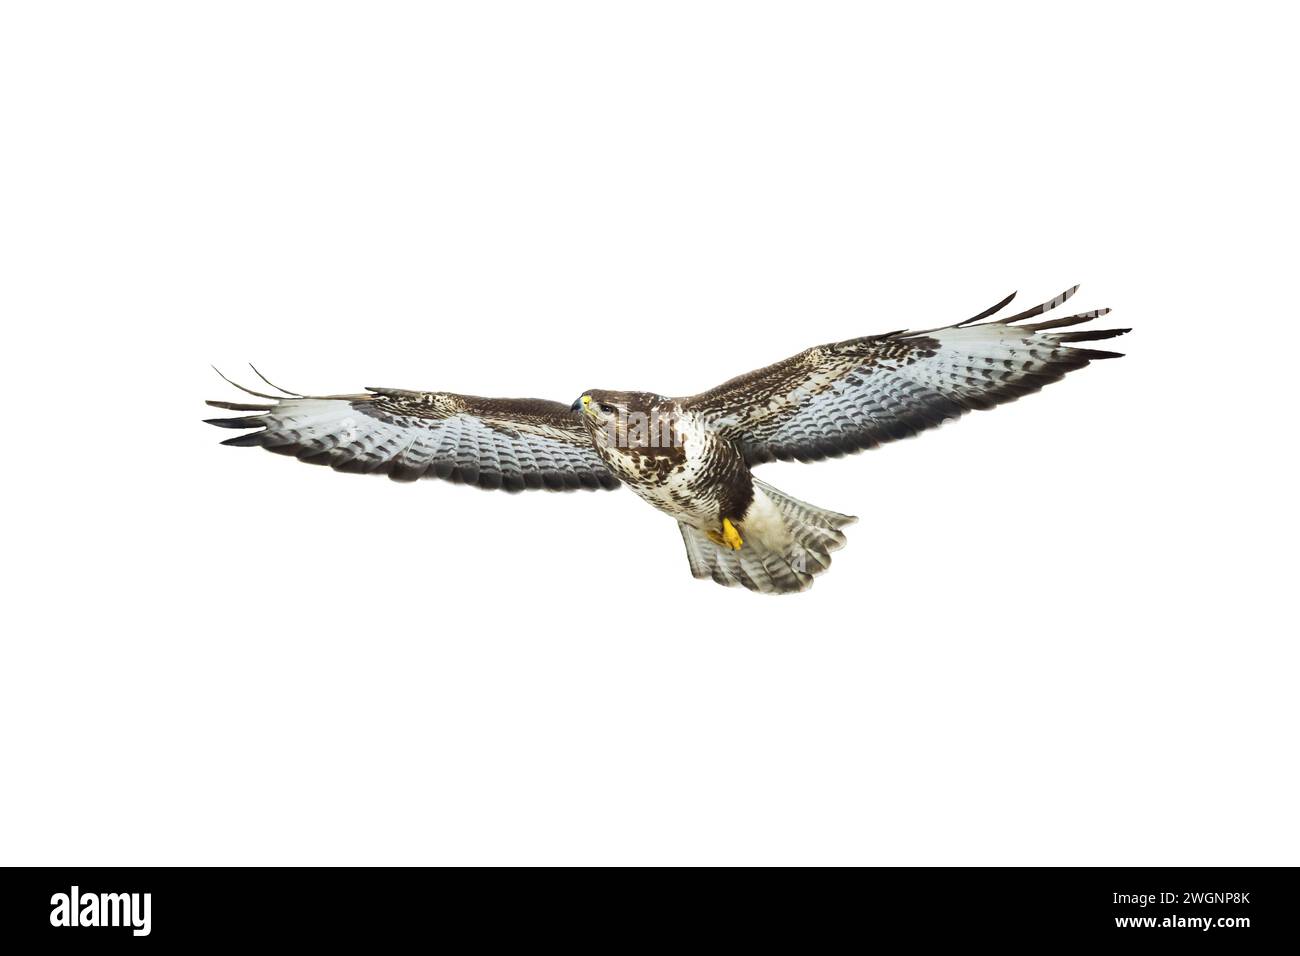 Greifvögel - Bussard Buteo Buteo fliegen, Falkenvögel, Raubvögel Nahaufnahme fliegenden Vogel auf weißem Hintergrund isoliert Stockfoto